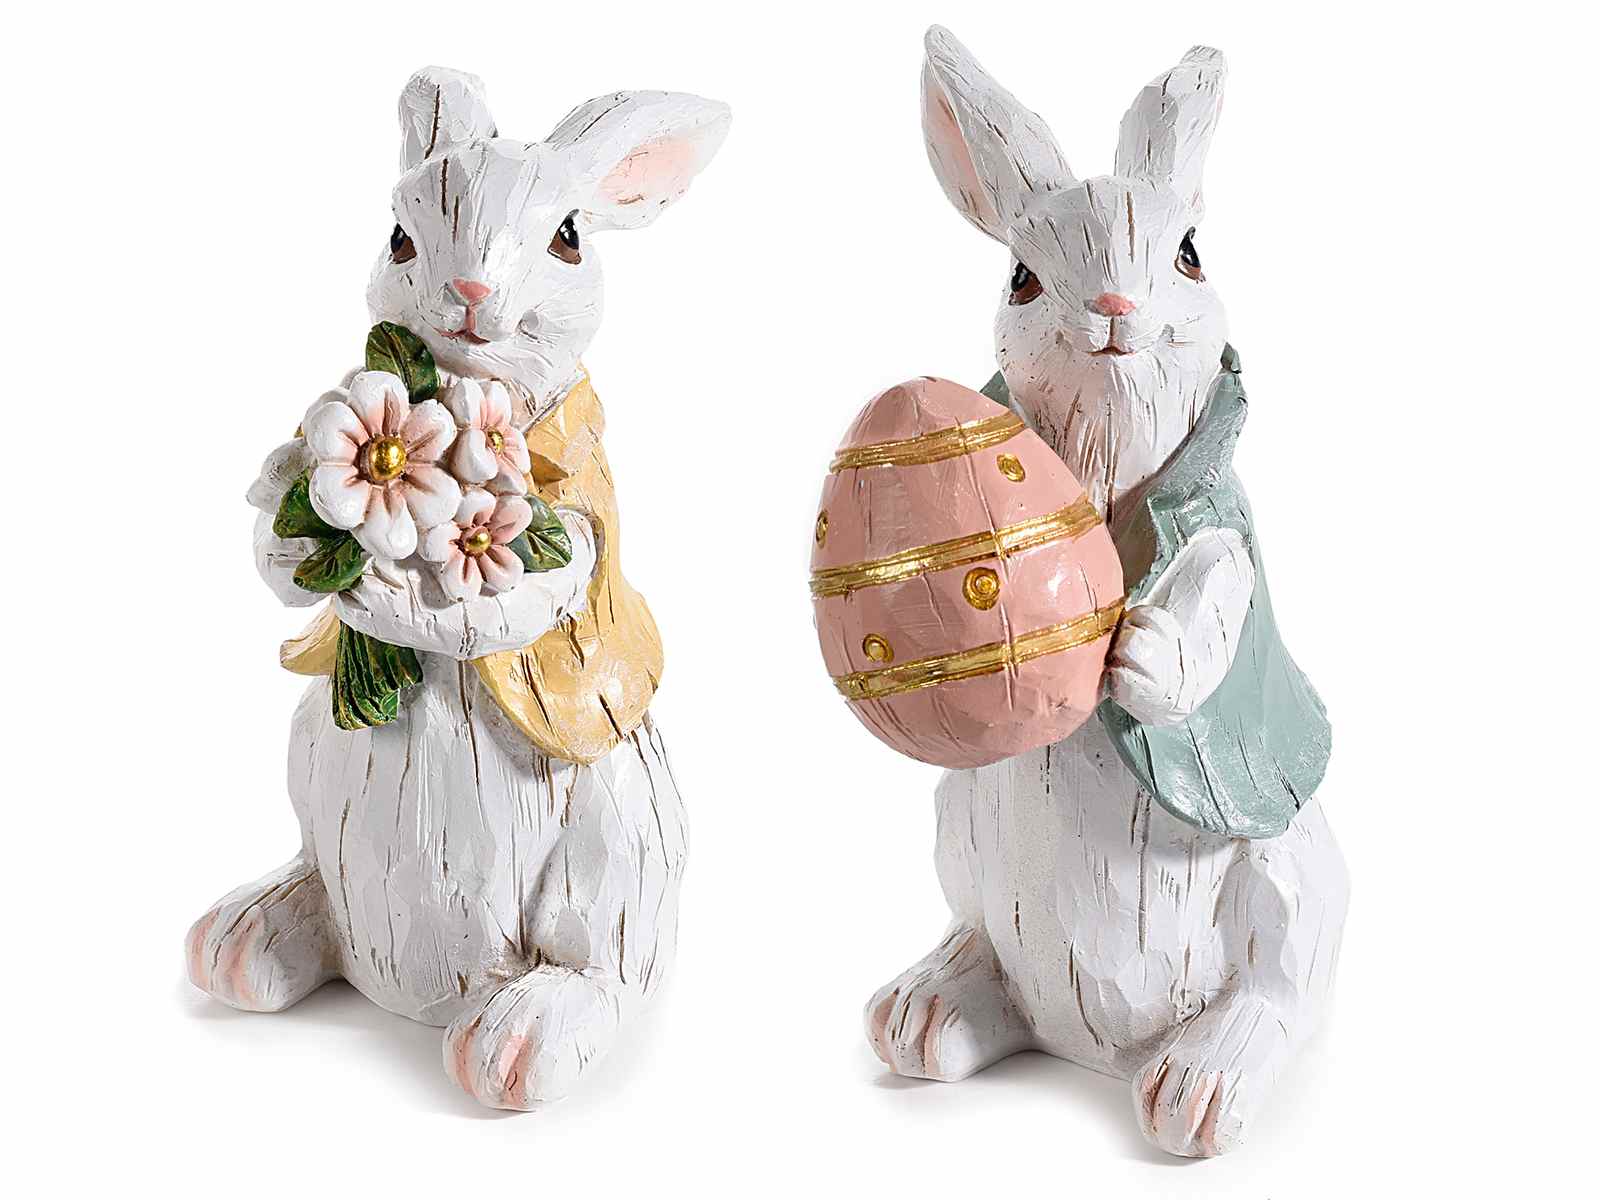 Coniglio bianco pasquale in resina effetto legno scolpito (55.37.02) - Art  From Italy